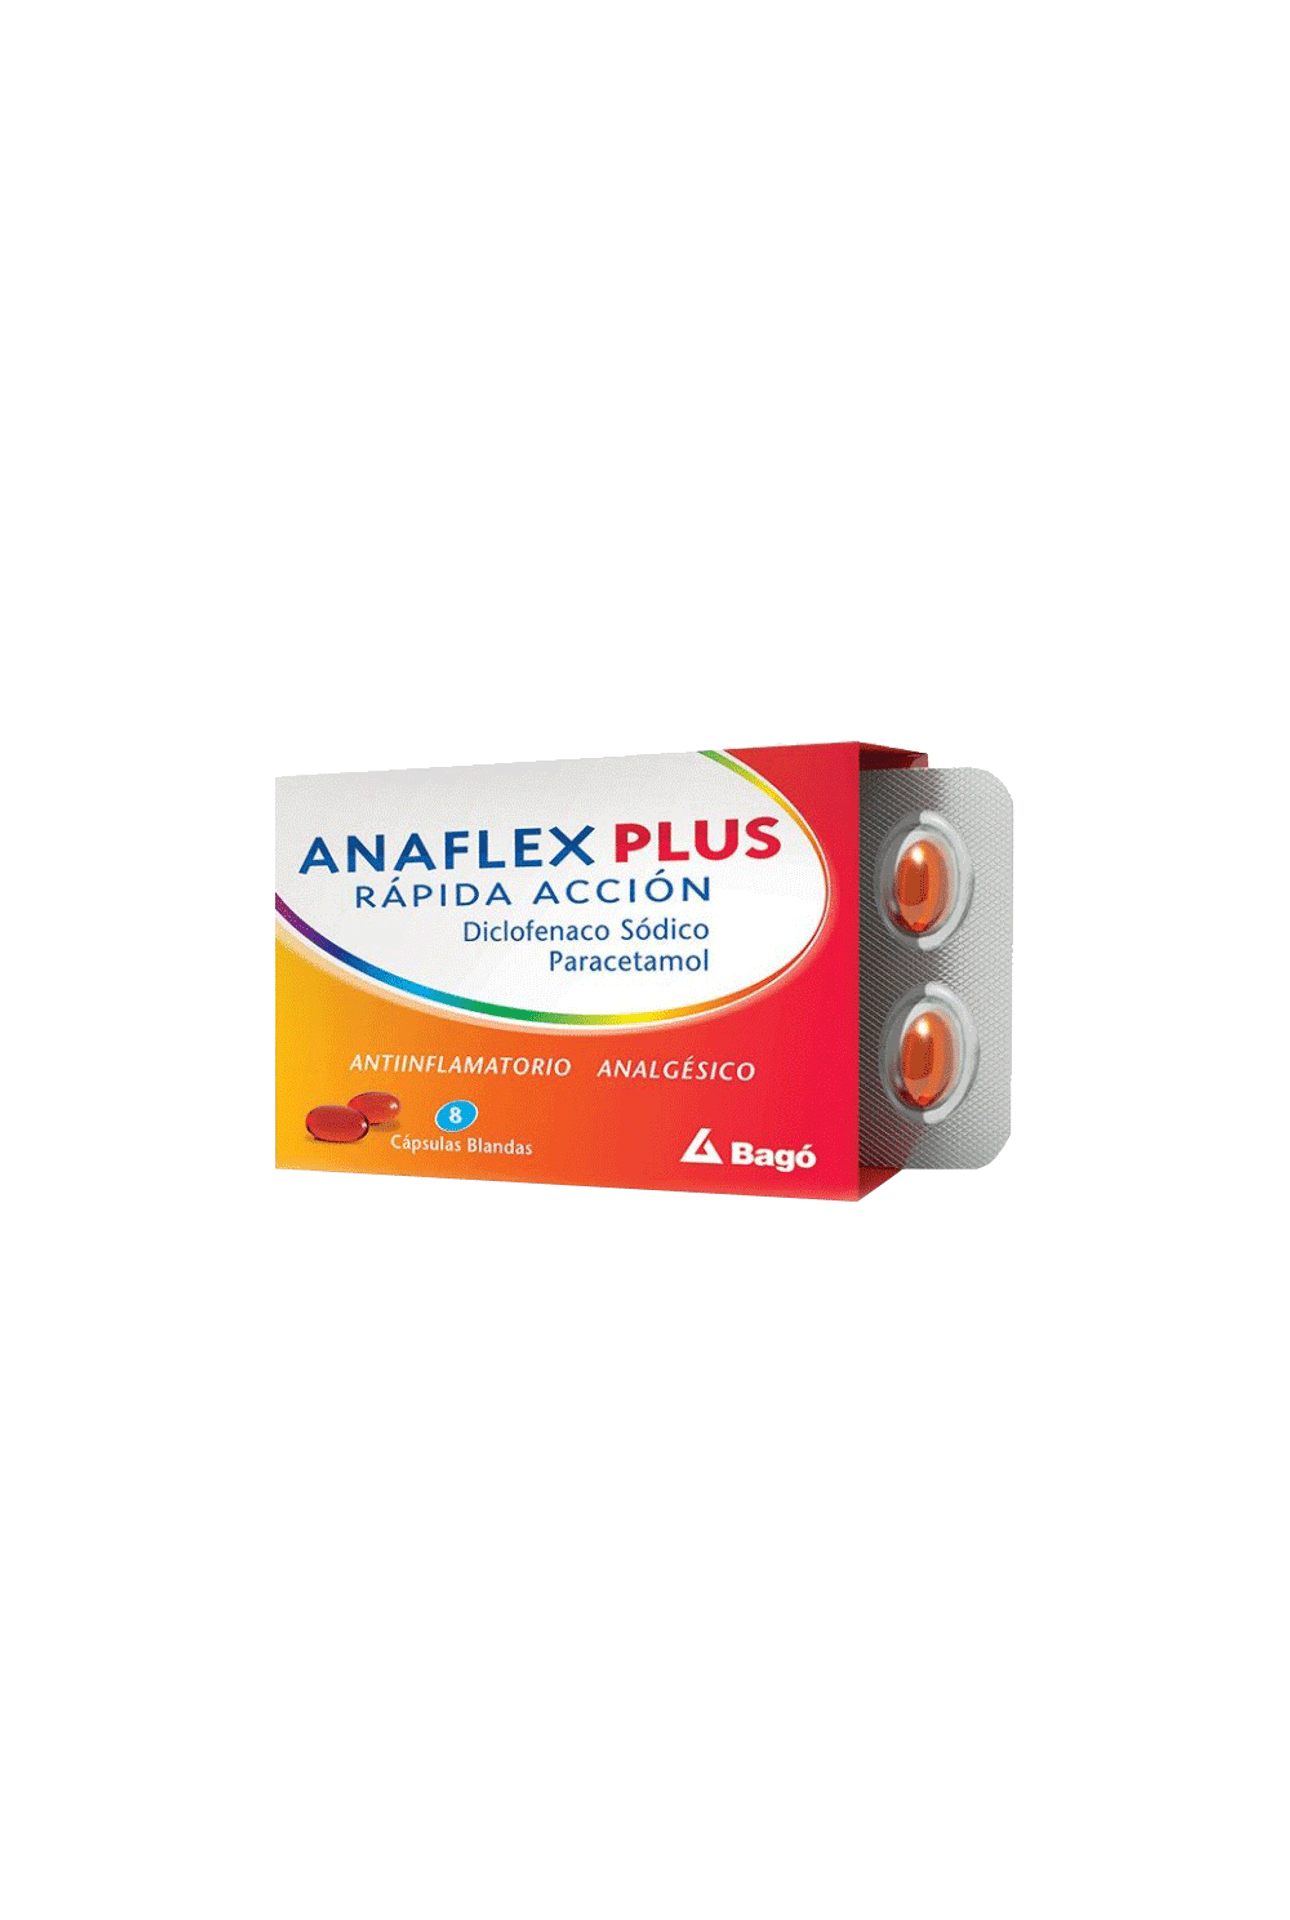 Anaflex-Plus-Rapida-Accion-x-8-Capsulas-Blandas-Anaflex